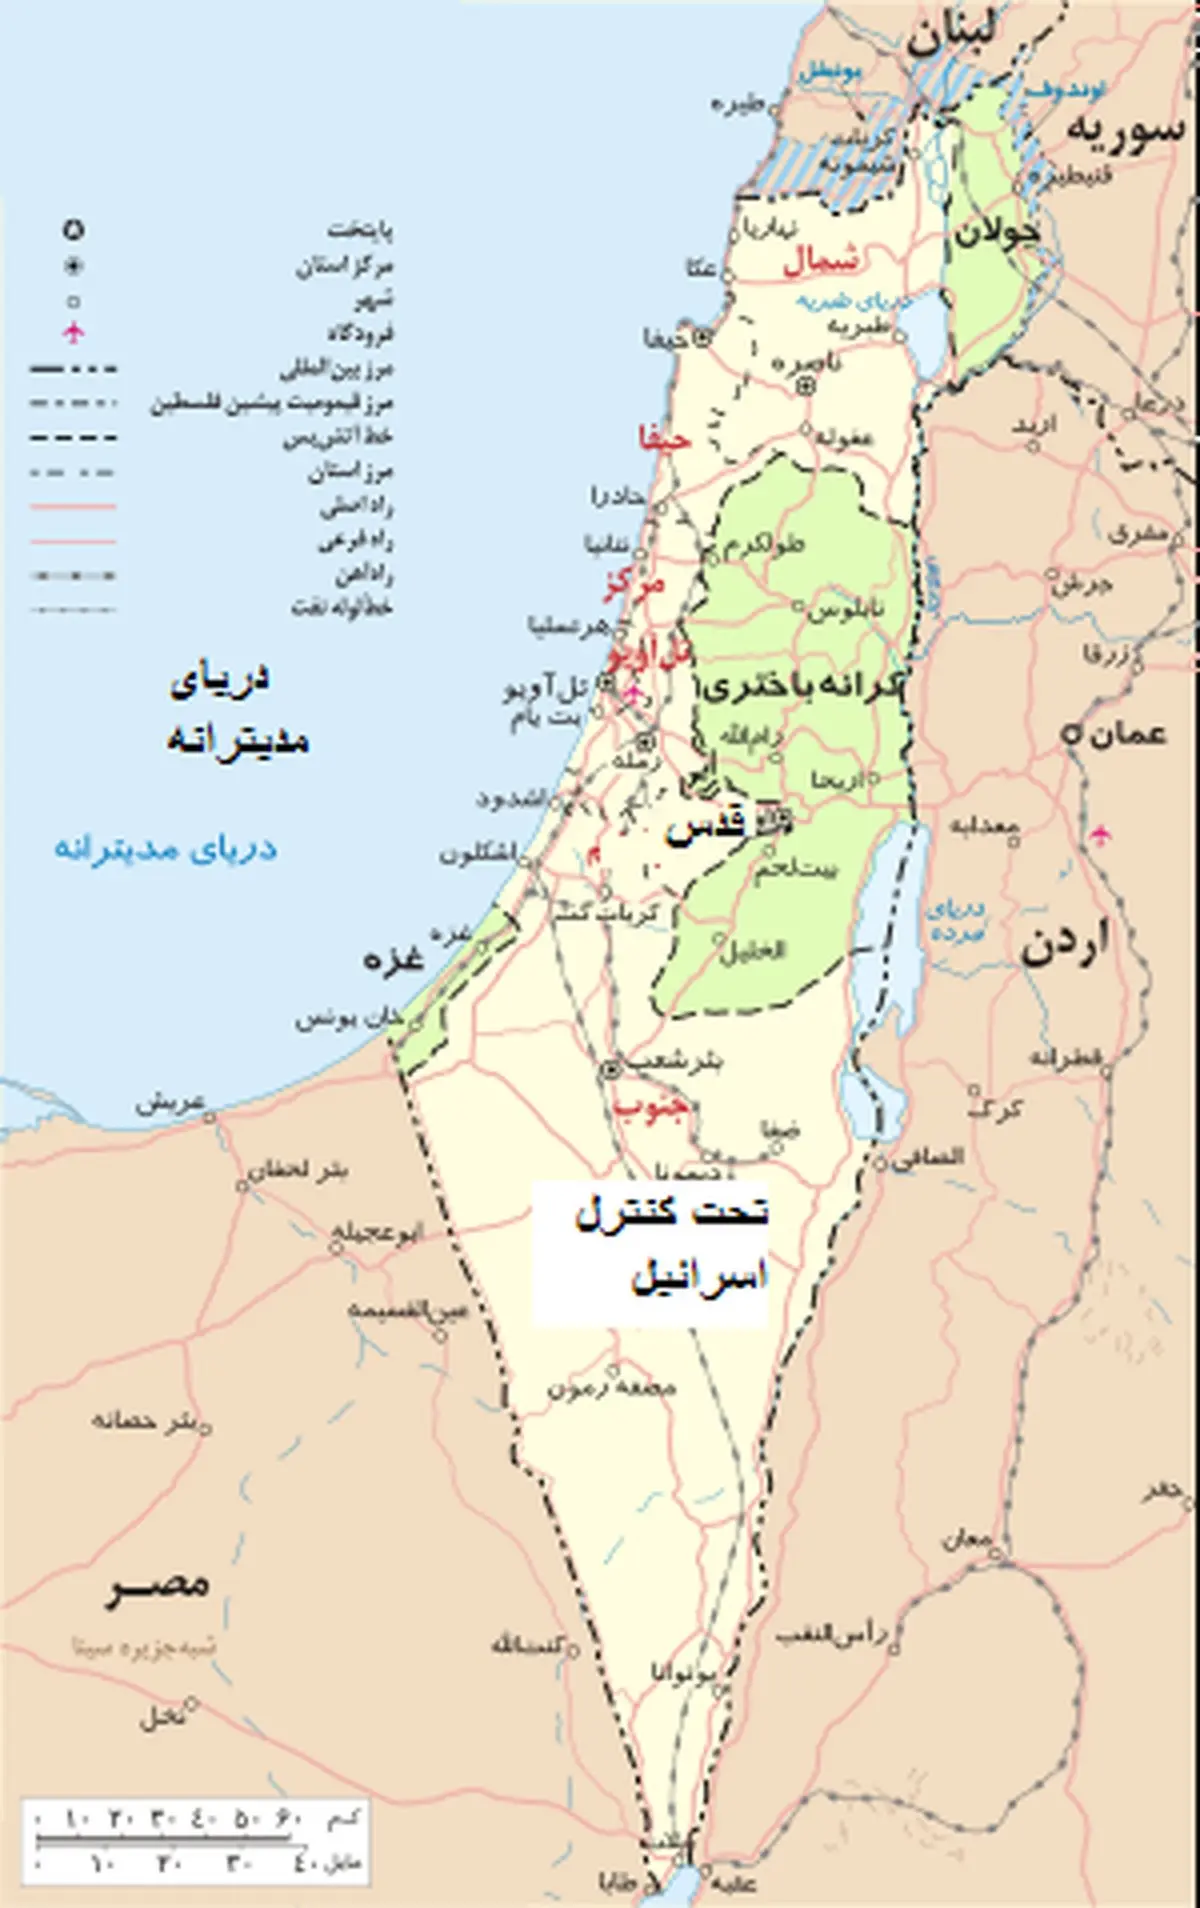 7 نکته درباره مسئله فلسطین و اسرائیل و حوادث اخیر 